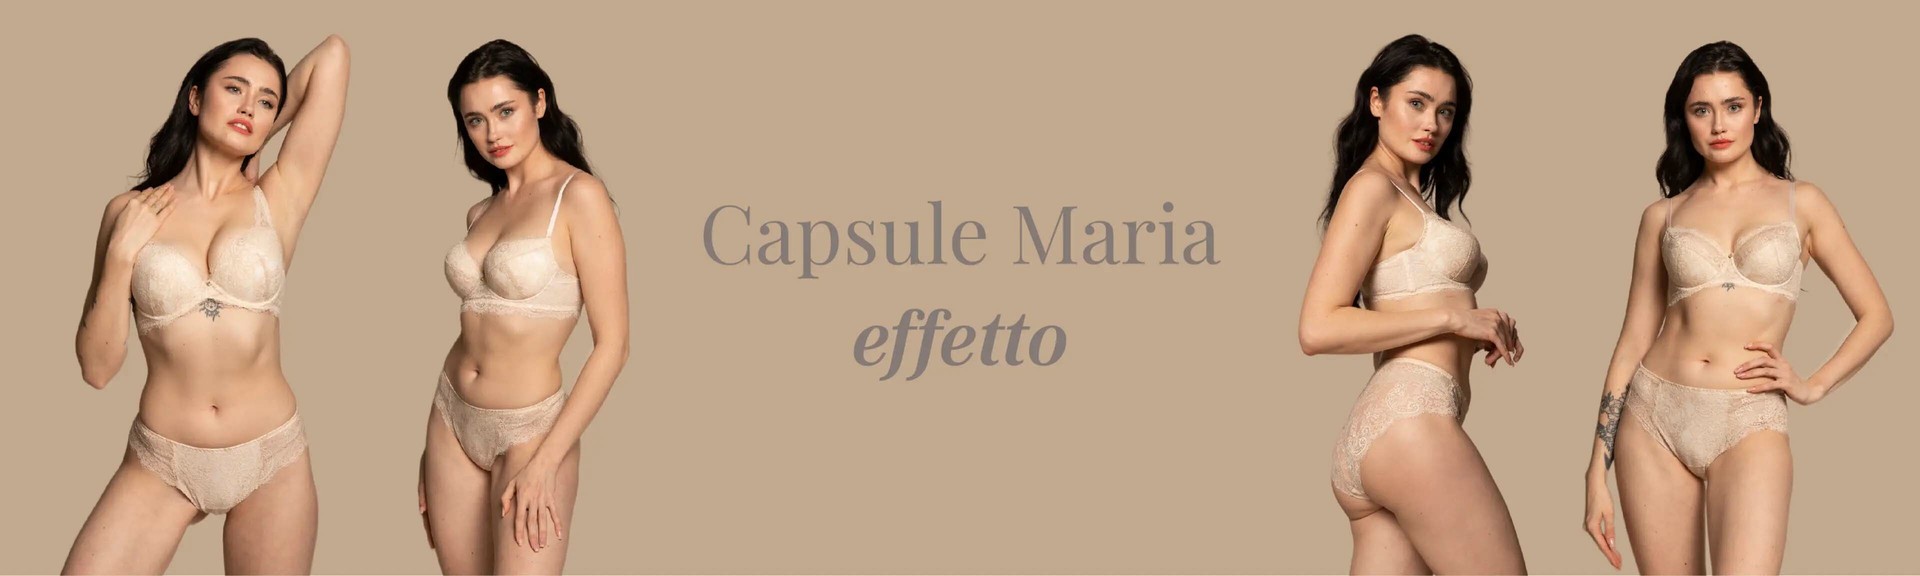 Effetto - Capsula Maria